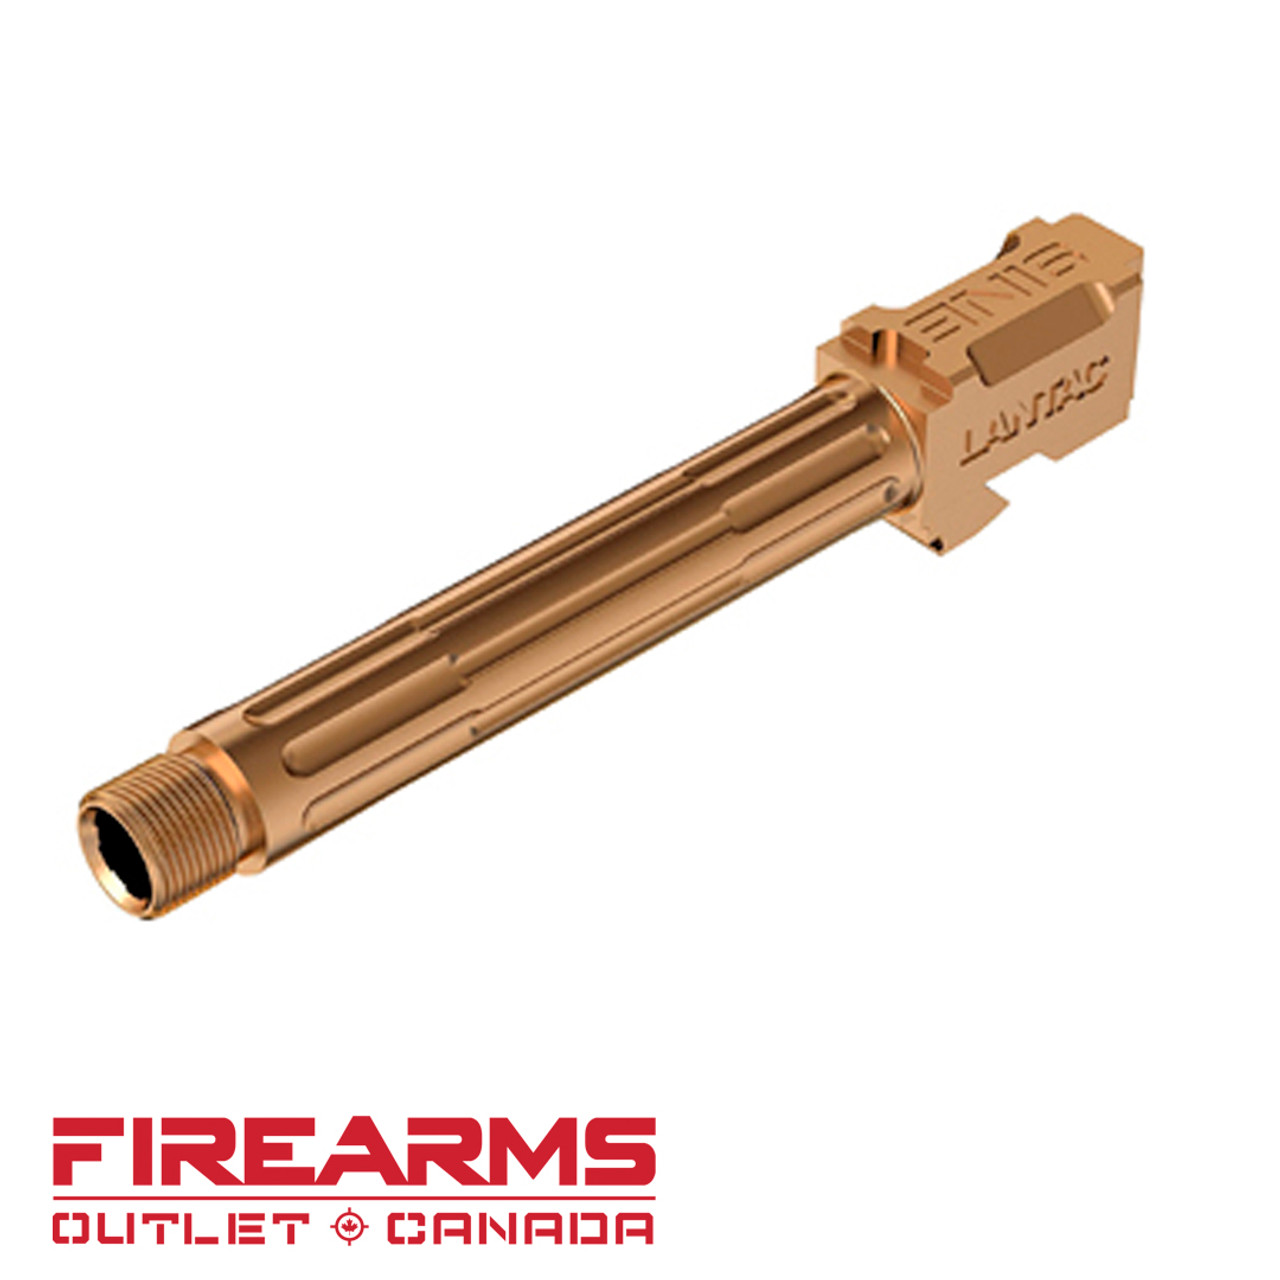 Lantac 9INE - Gold TiN, Threaded Barrel  For Glock 17 Gen 3/4 [01-GB-G17-TH-BRNZ]